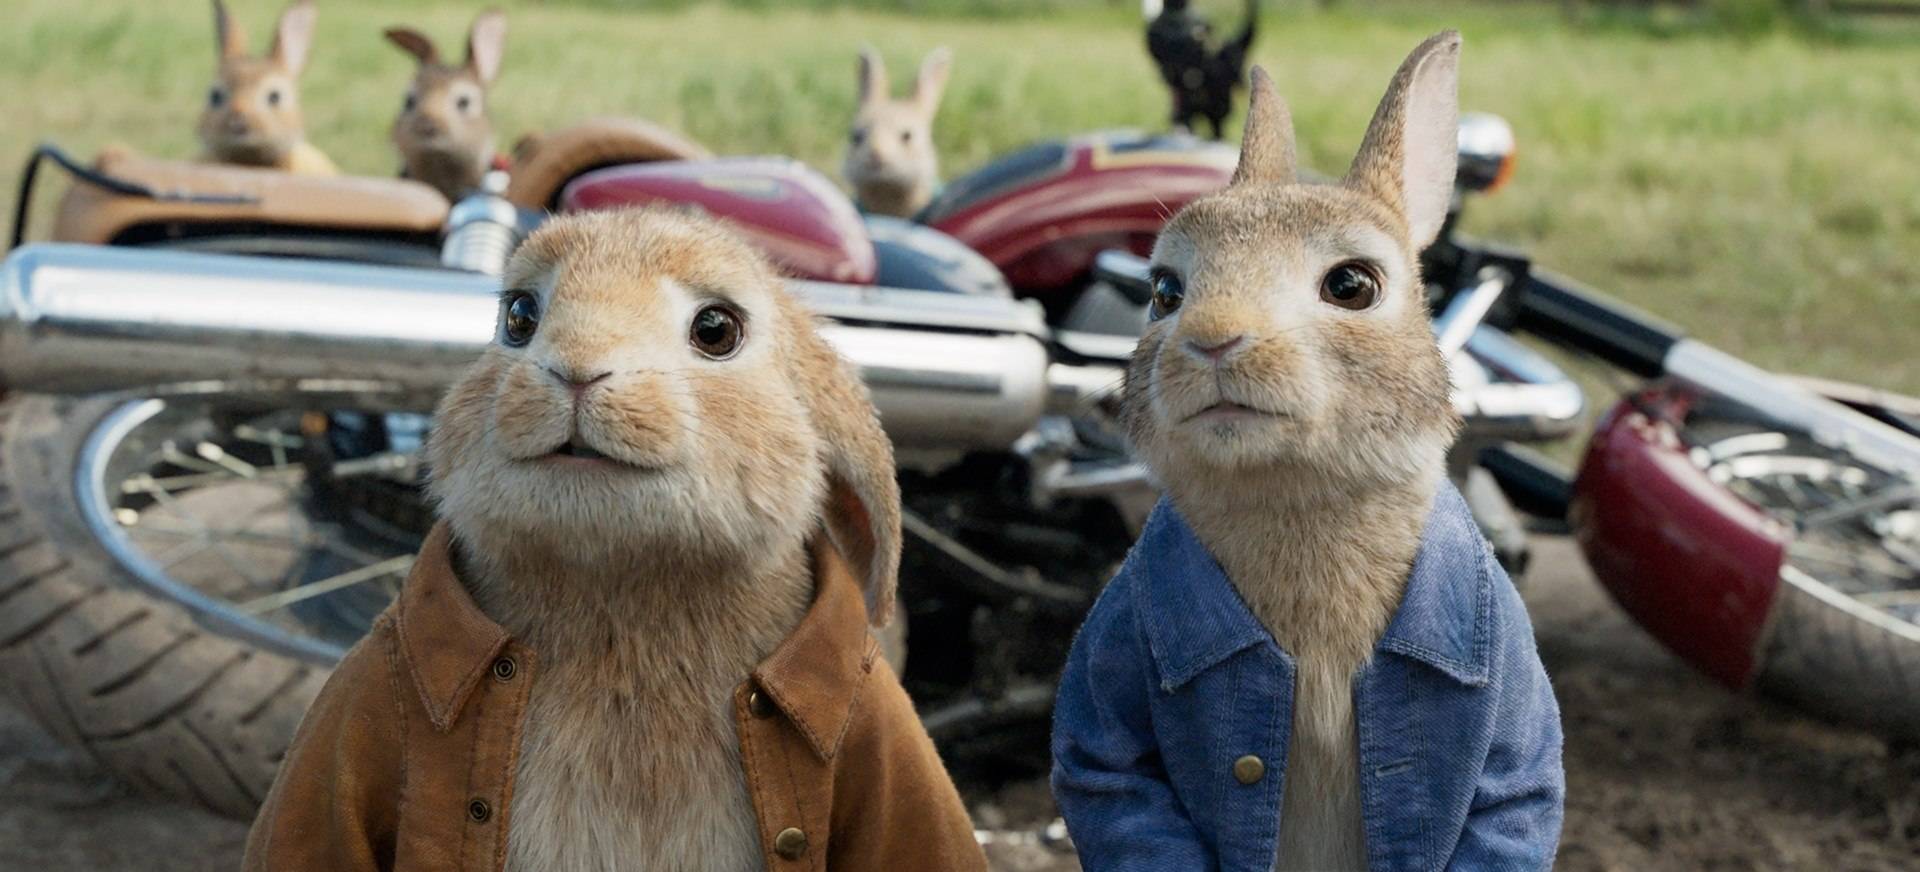 Selepas Filem No Time To Die, Tayangan Peter Rabbit 2 Juga Ditunda Gara-Gara COVID-19